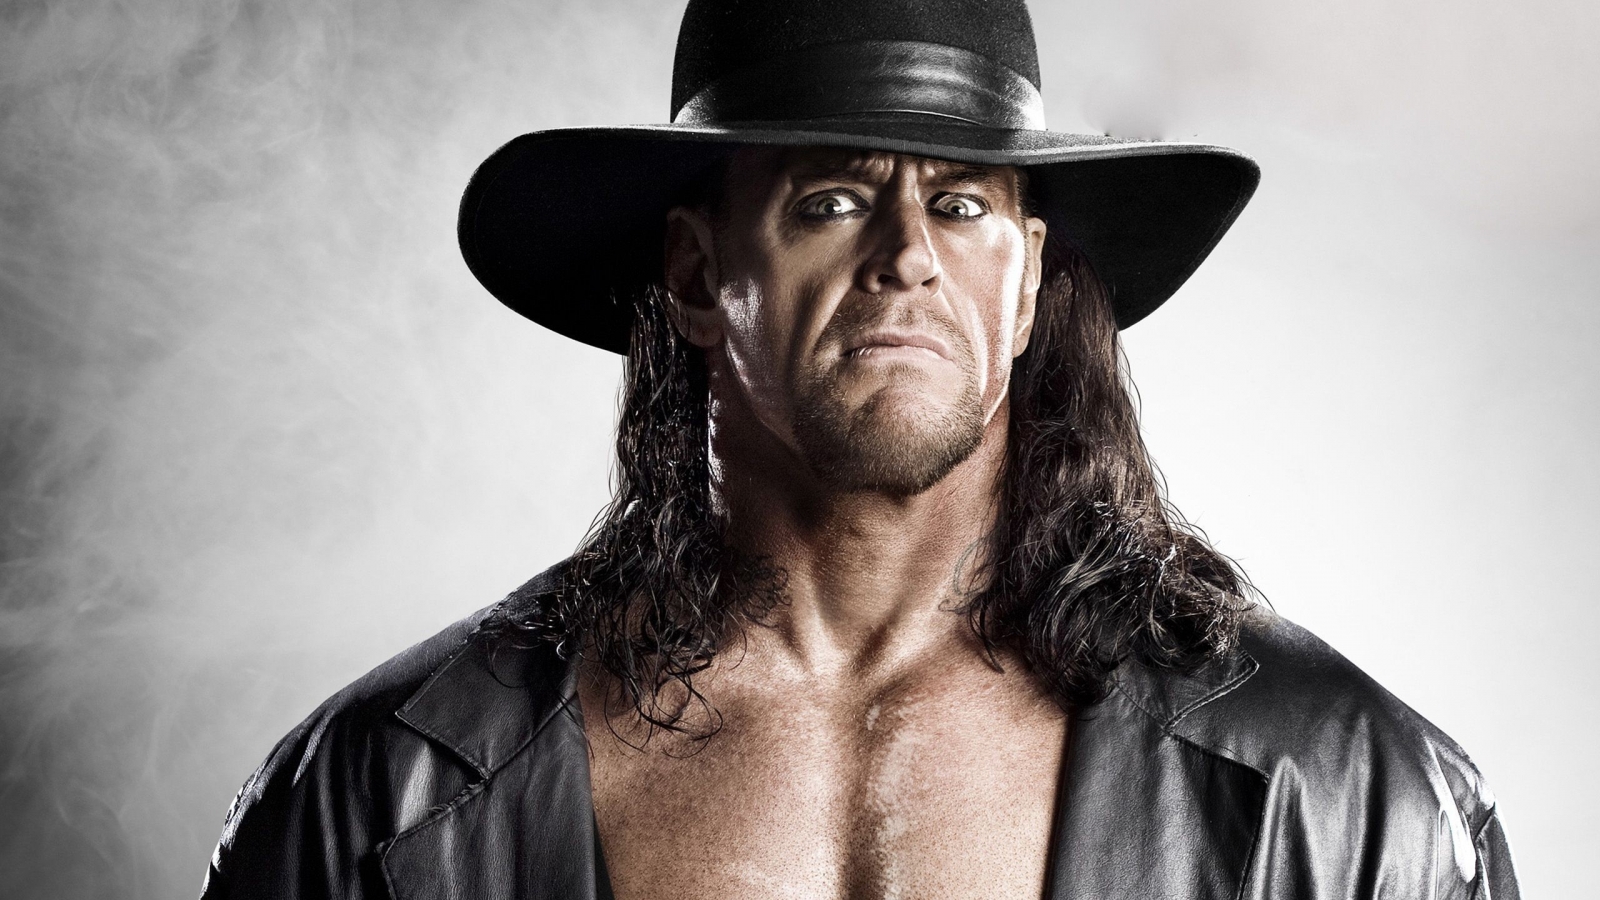 Undertaker for 1600 x 900 HDTV resolution